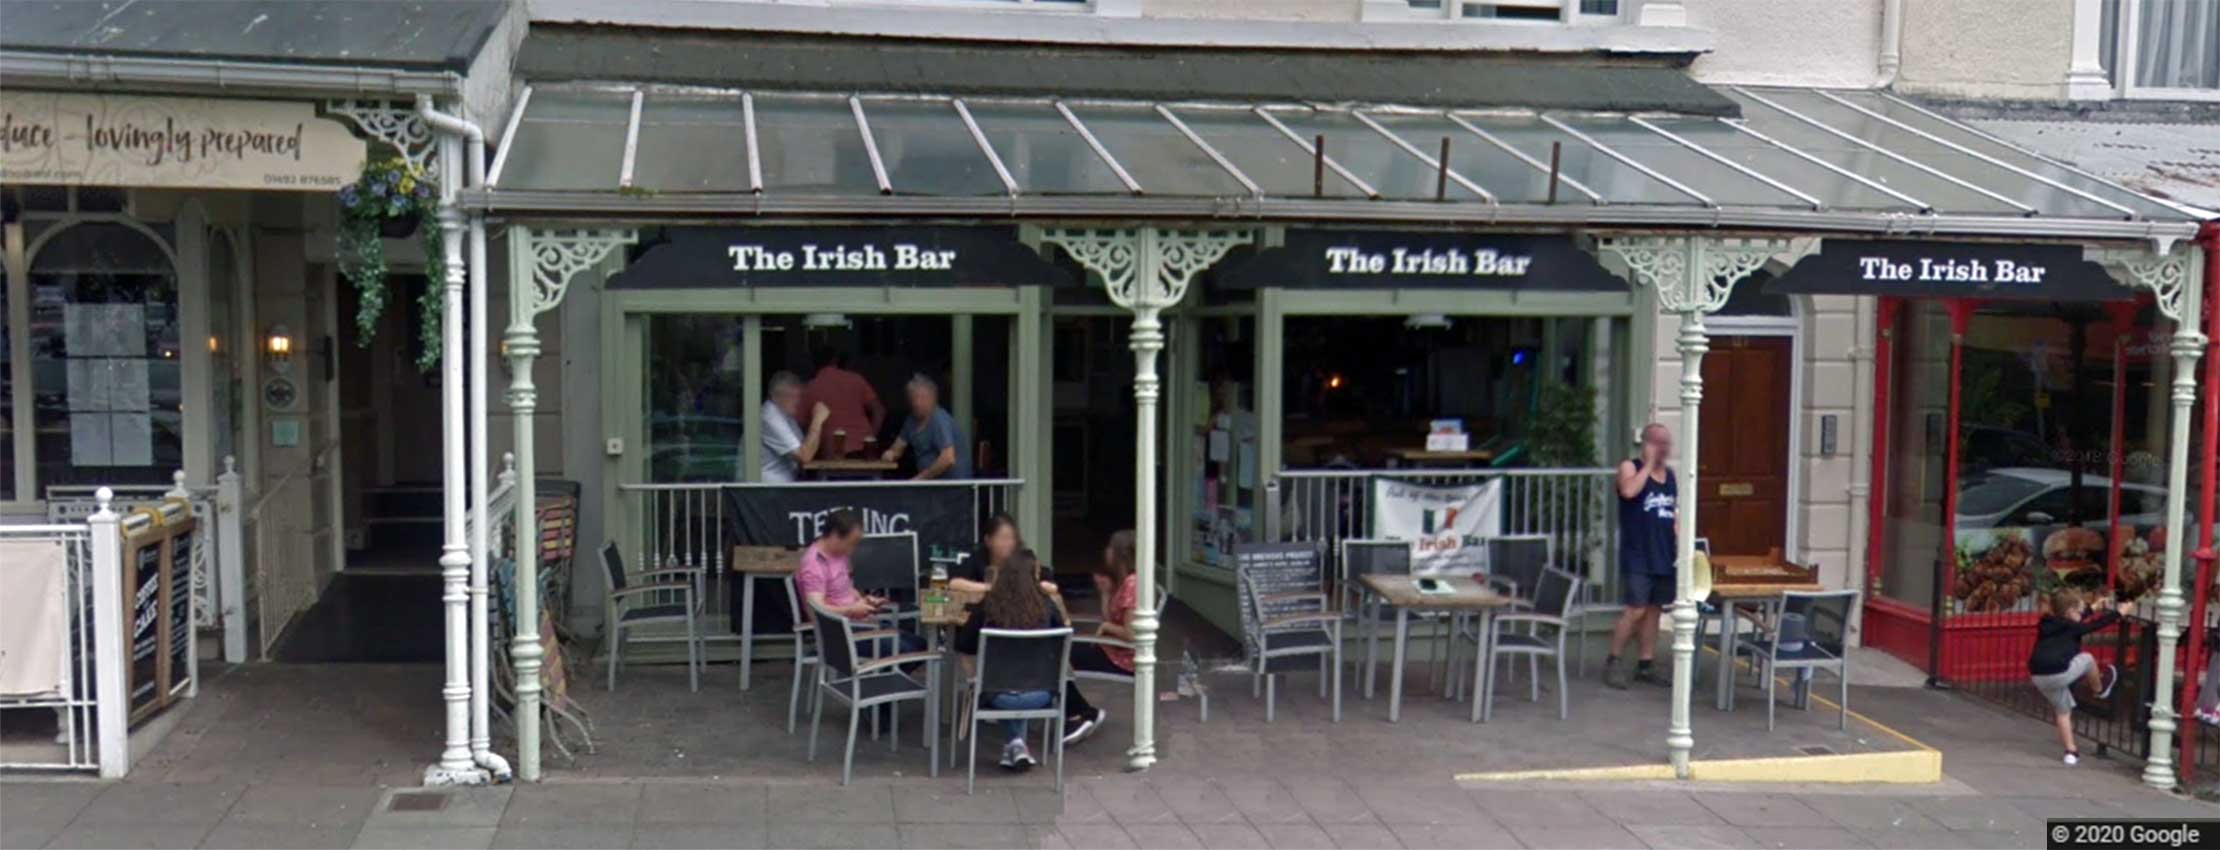 The Irish Bar, Llandudno